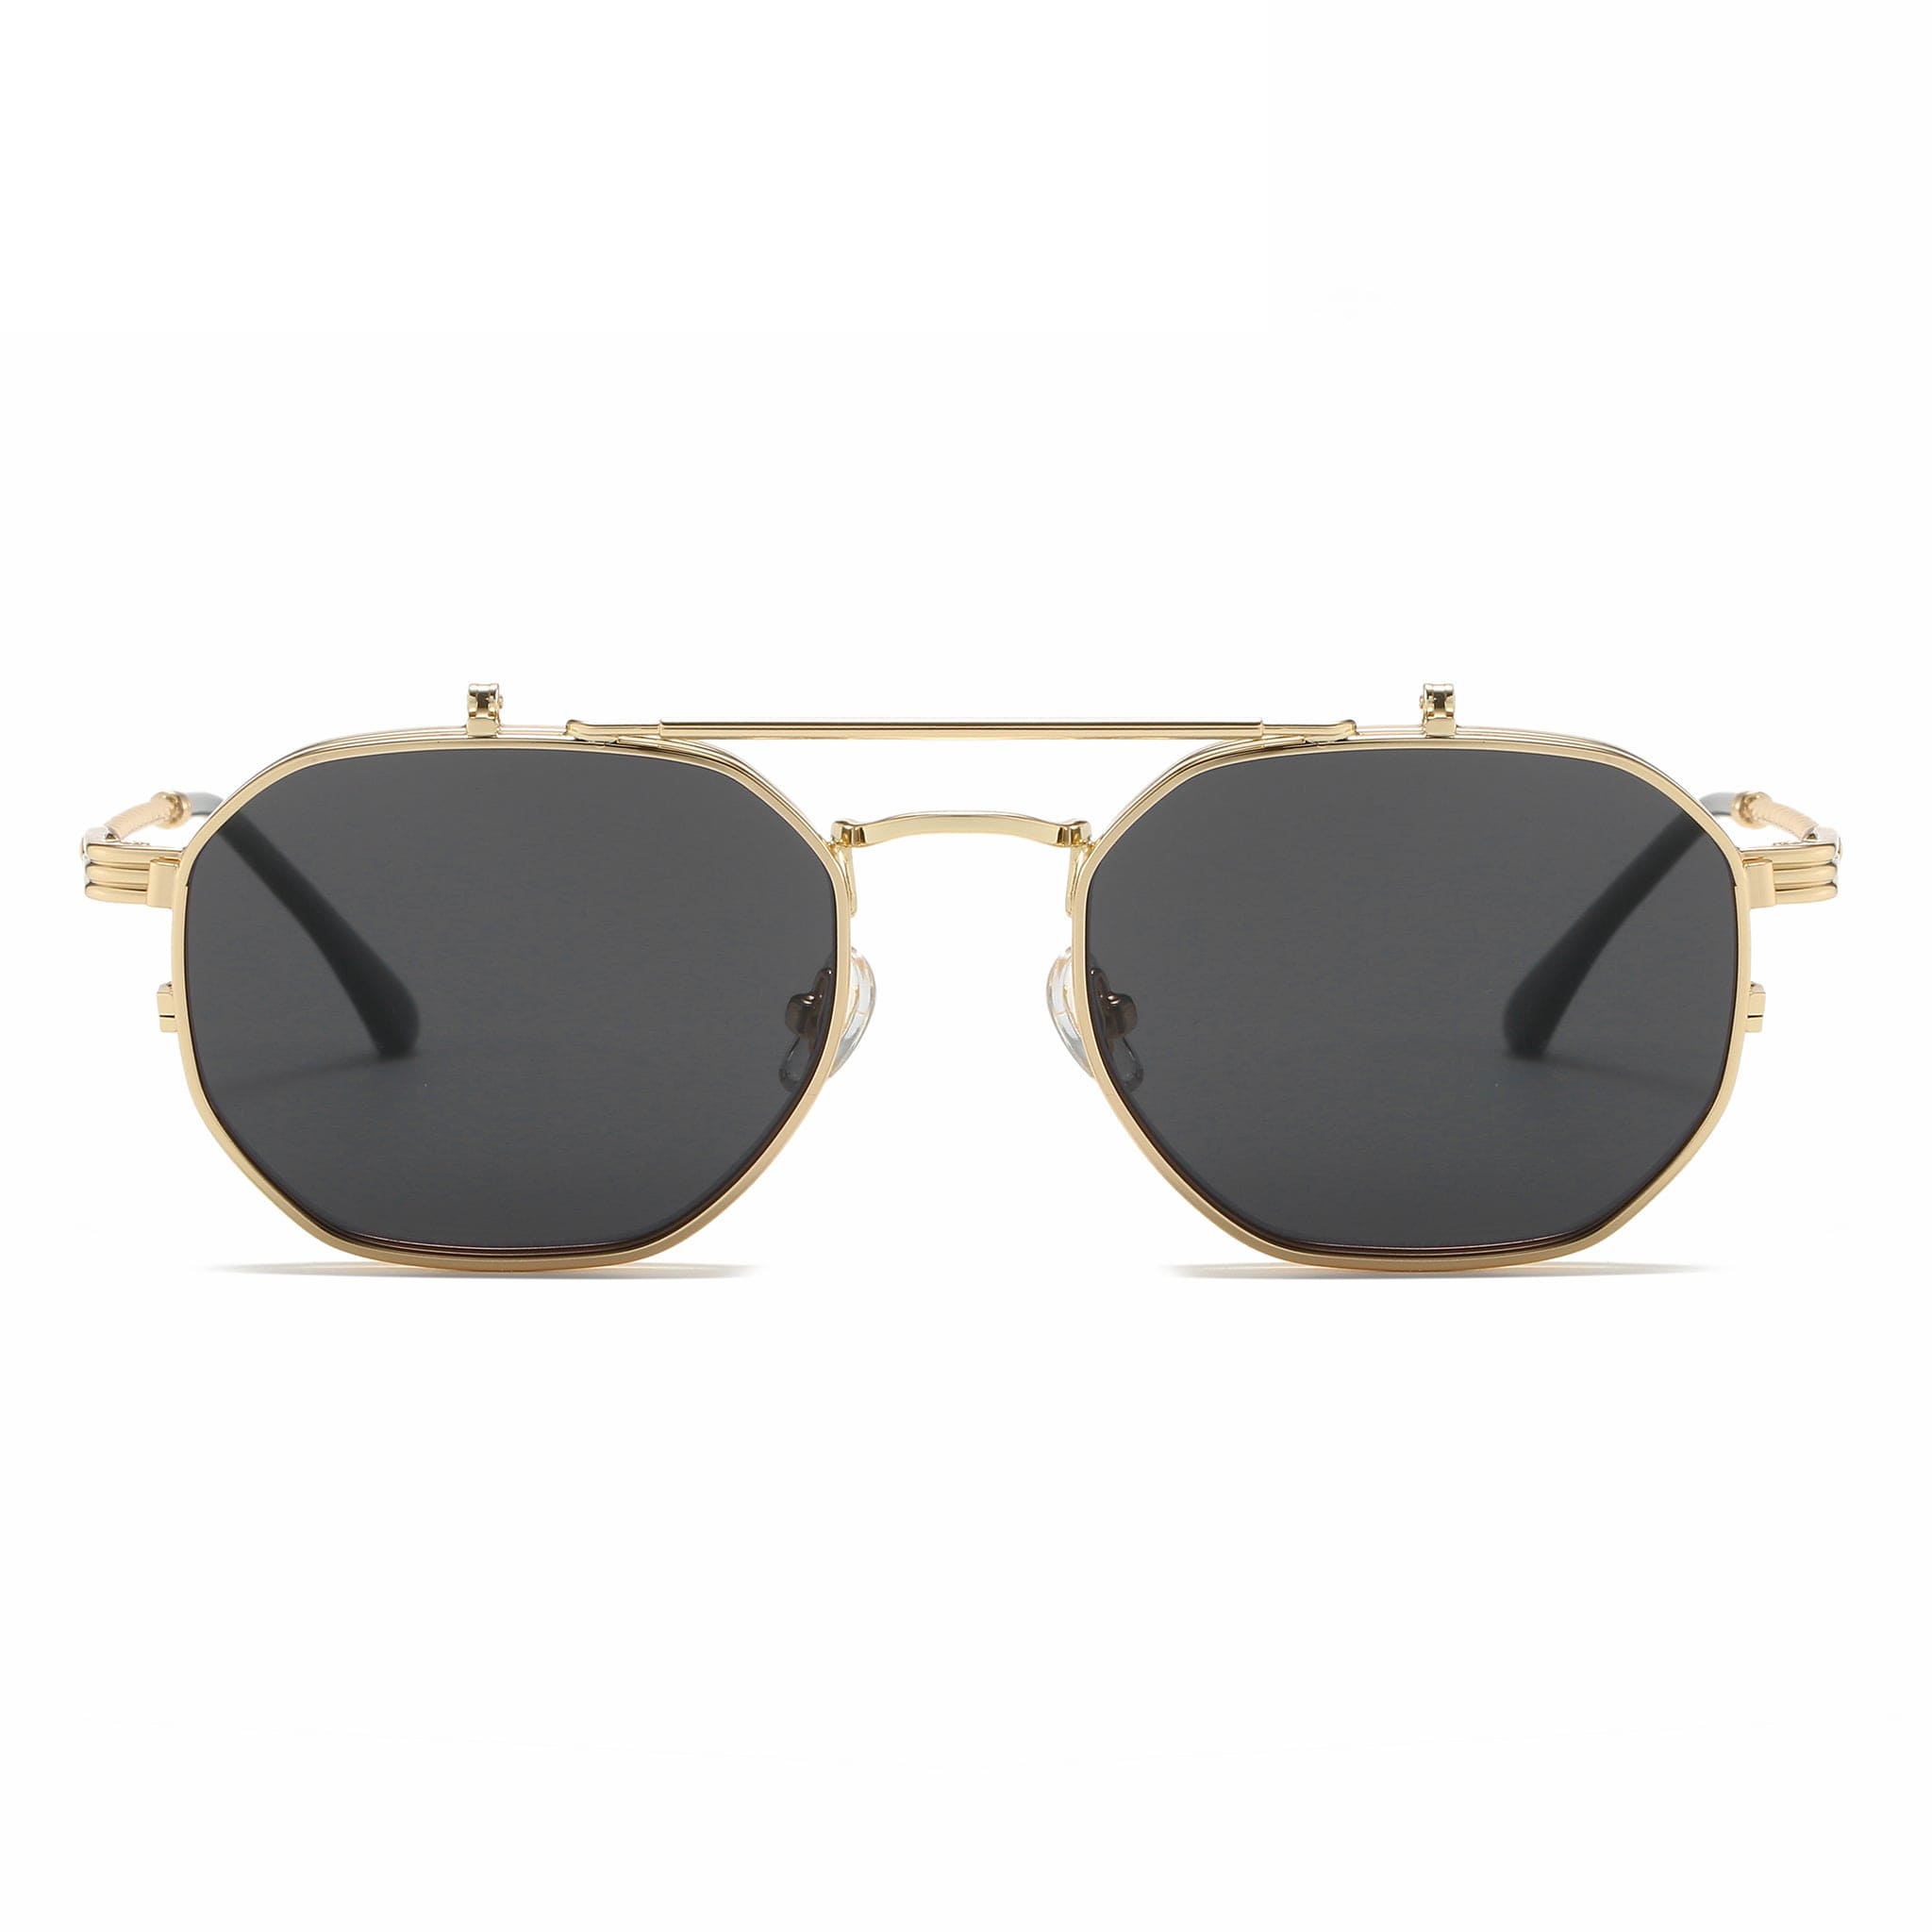 GIUSTIZIERI VECCHI Sunglasses Small / Black with Gold Cuore Di Vetro